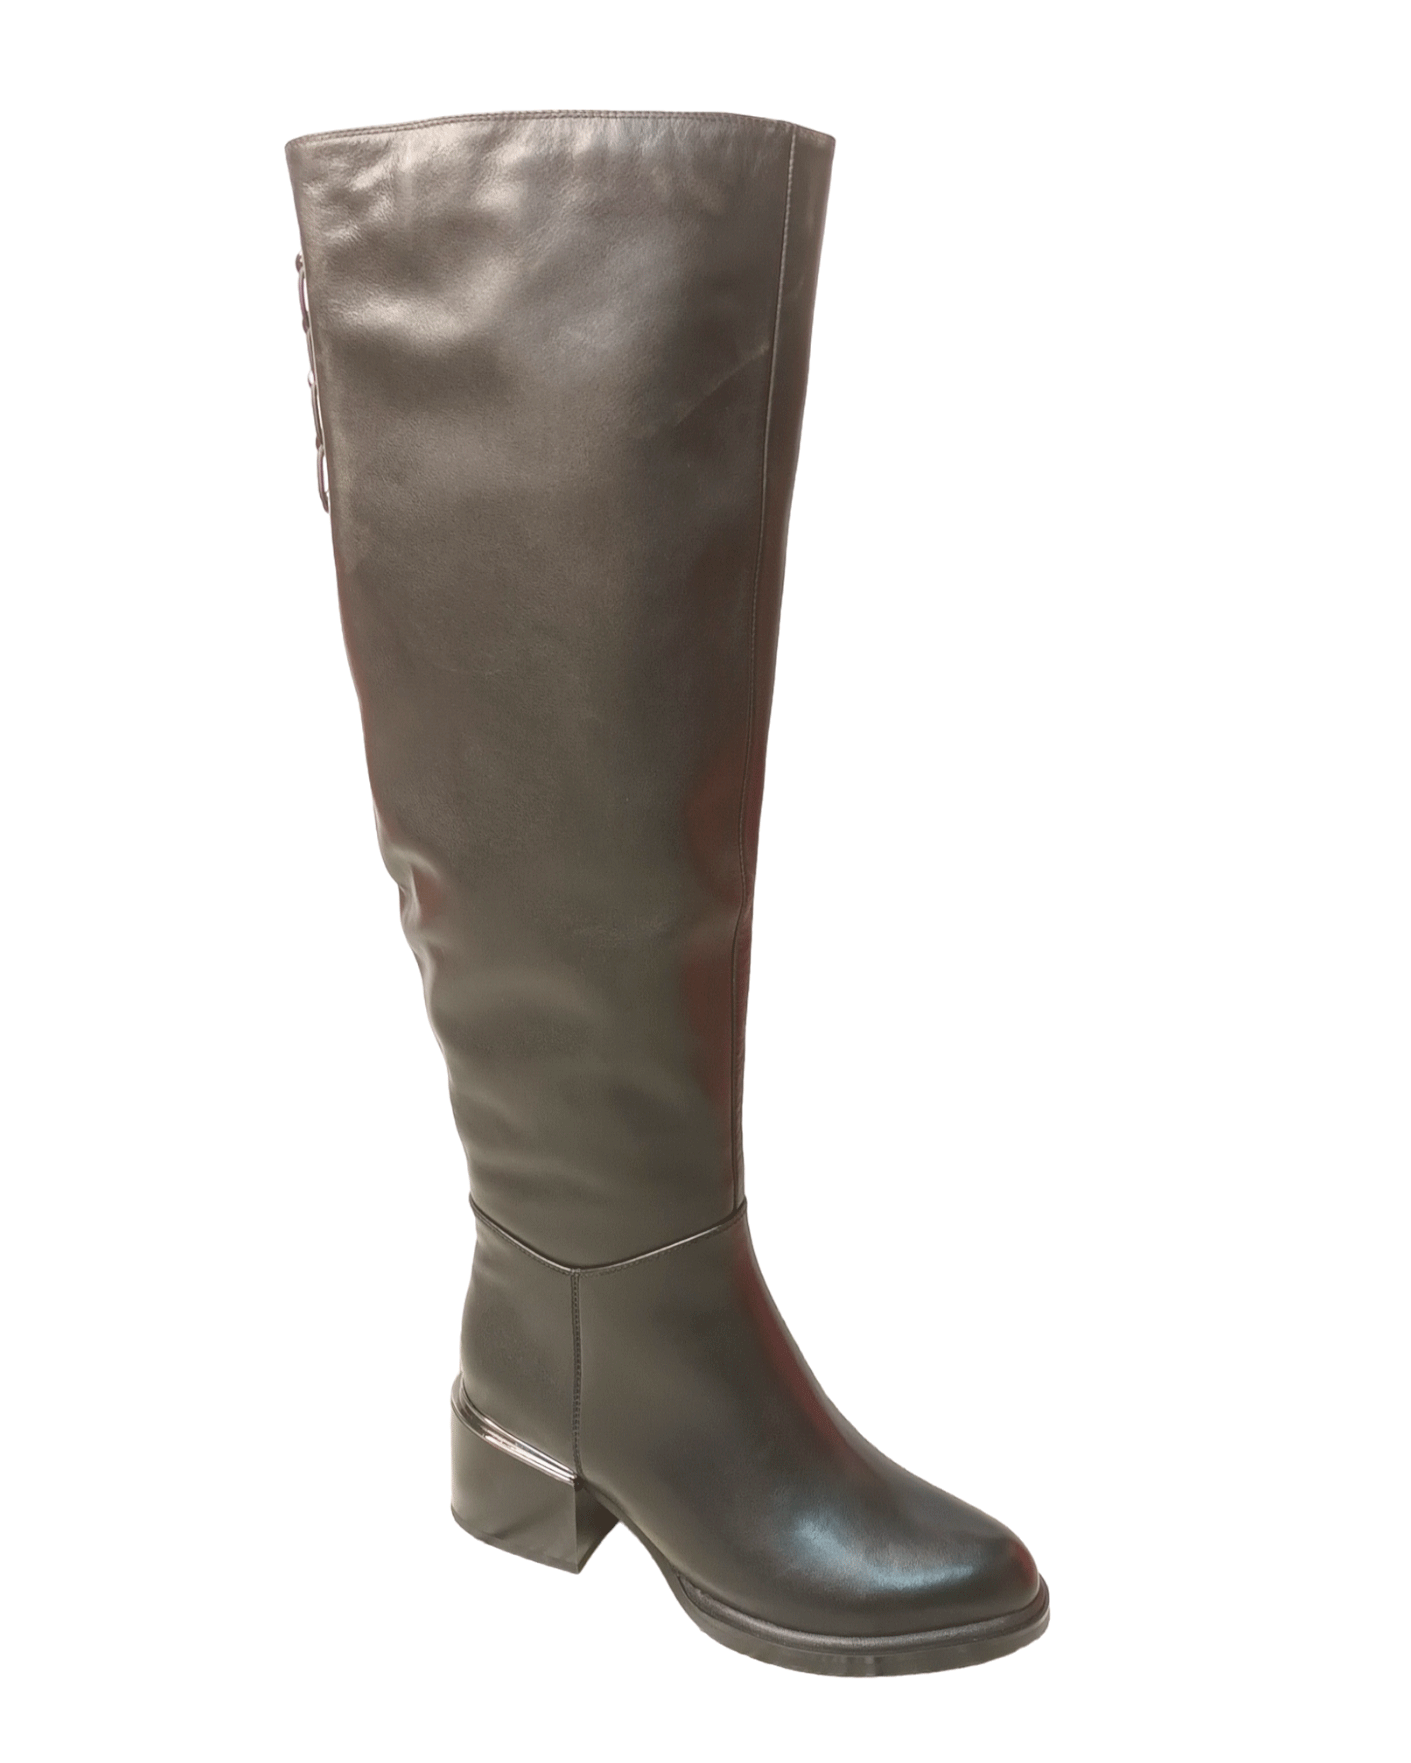 Сапоги женские зимние кожаные черные FHR020-0213-N251BN